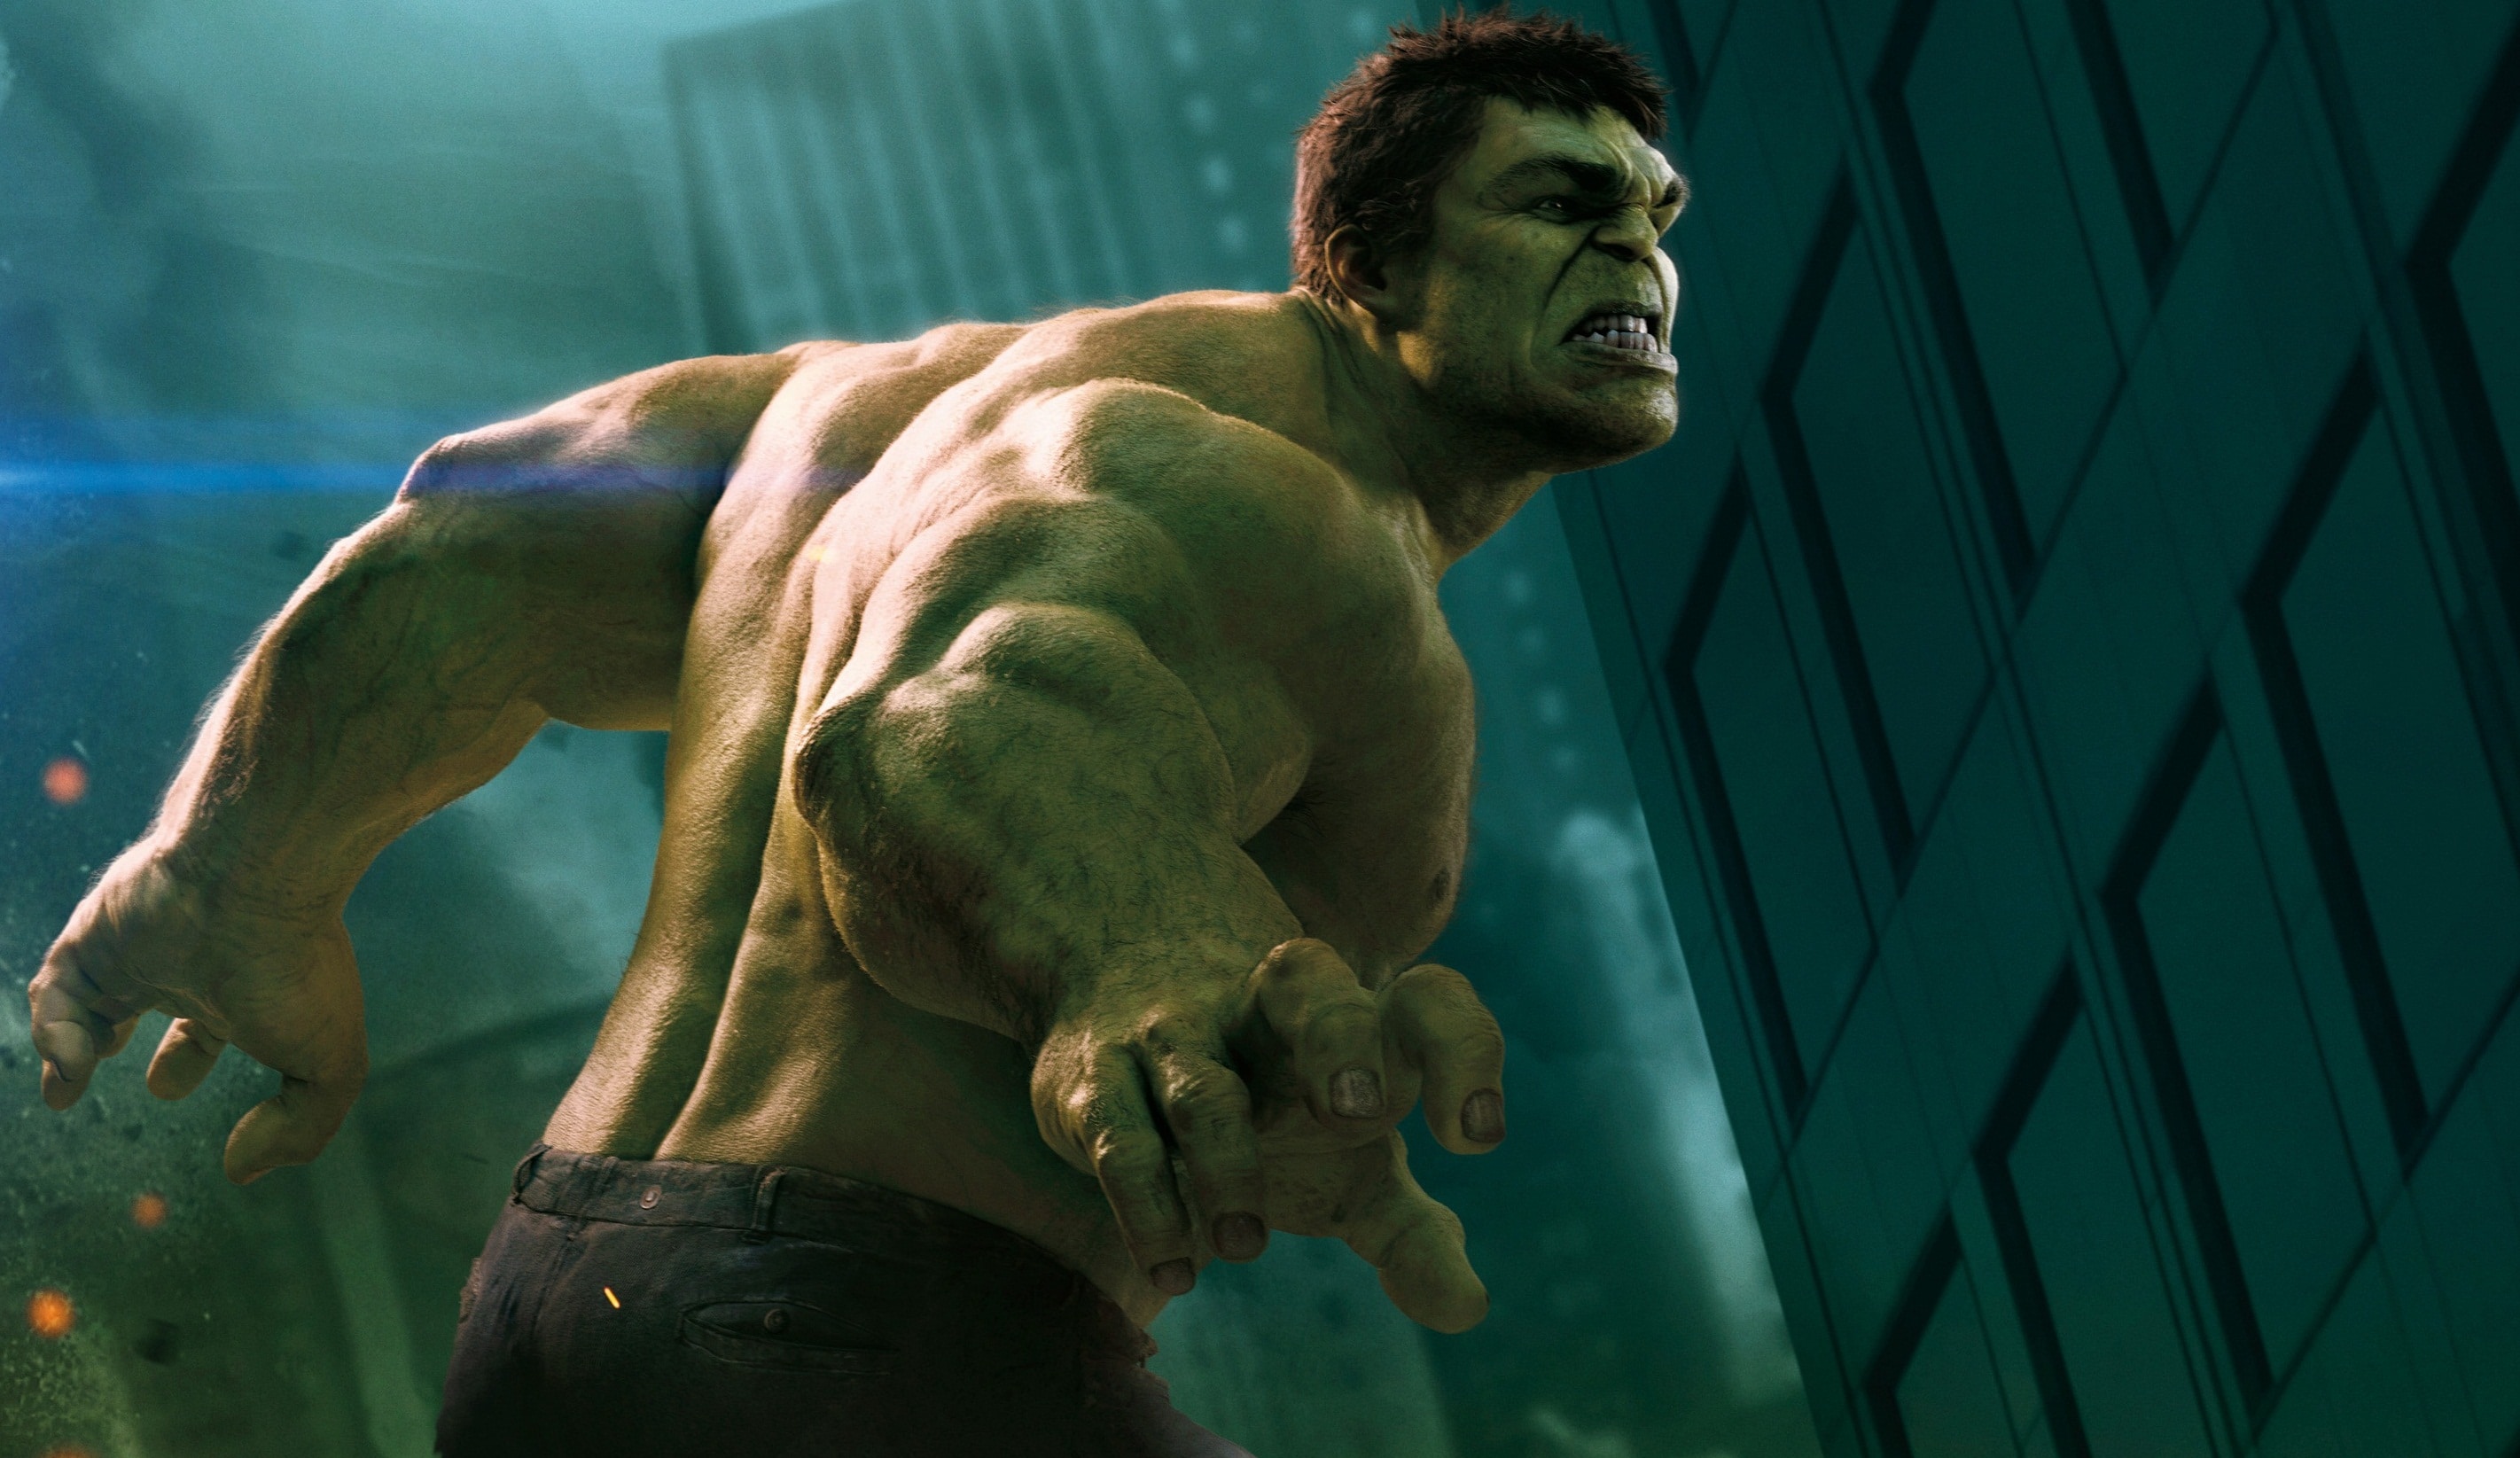 Incrível Hulk #1